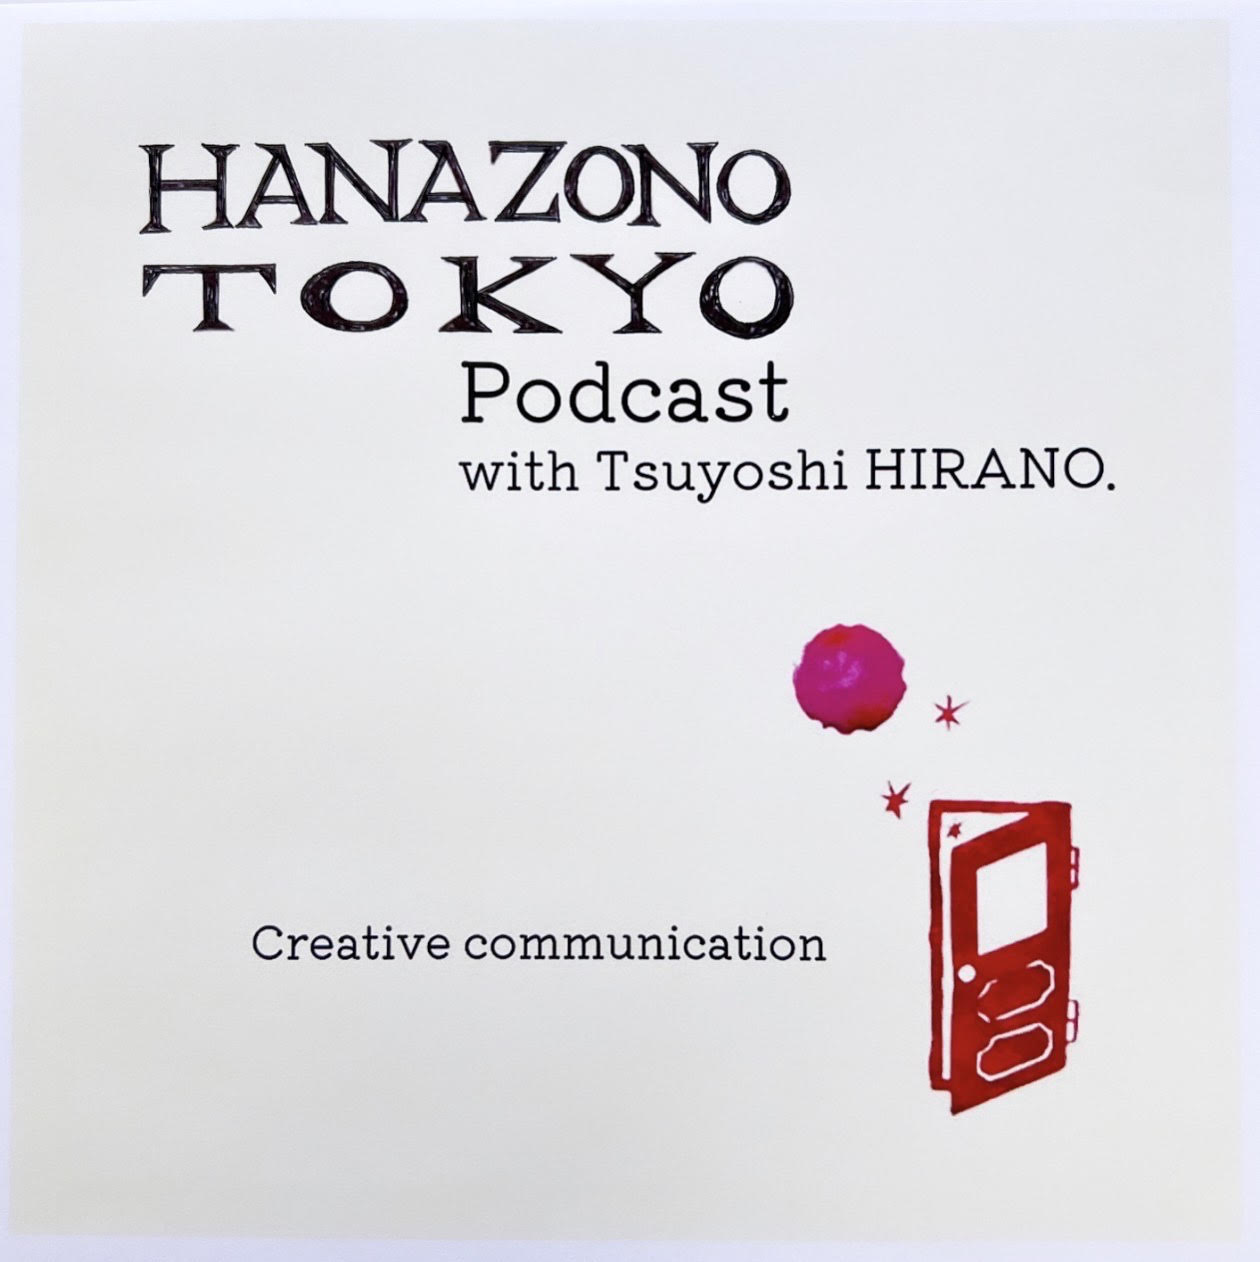 HANAZONO TOKYO Podcast